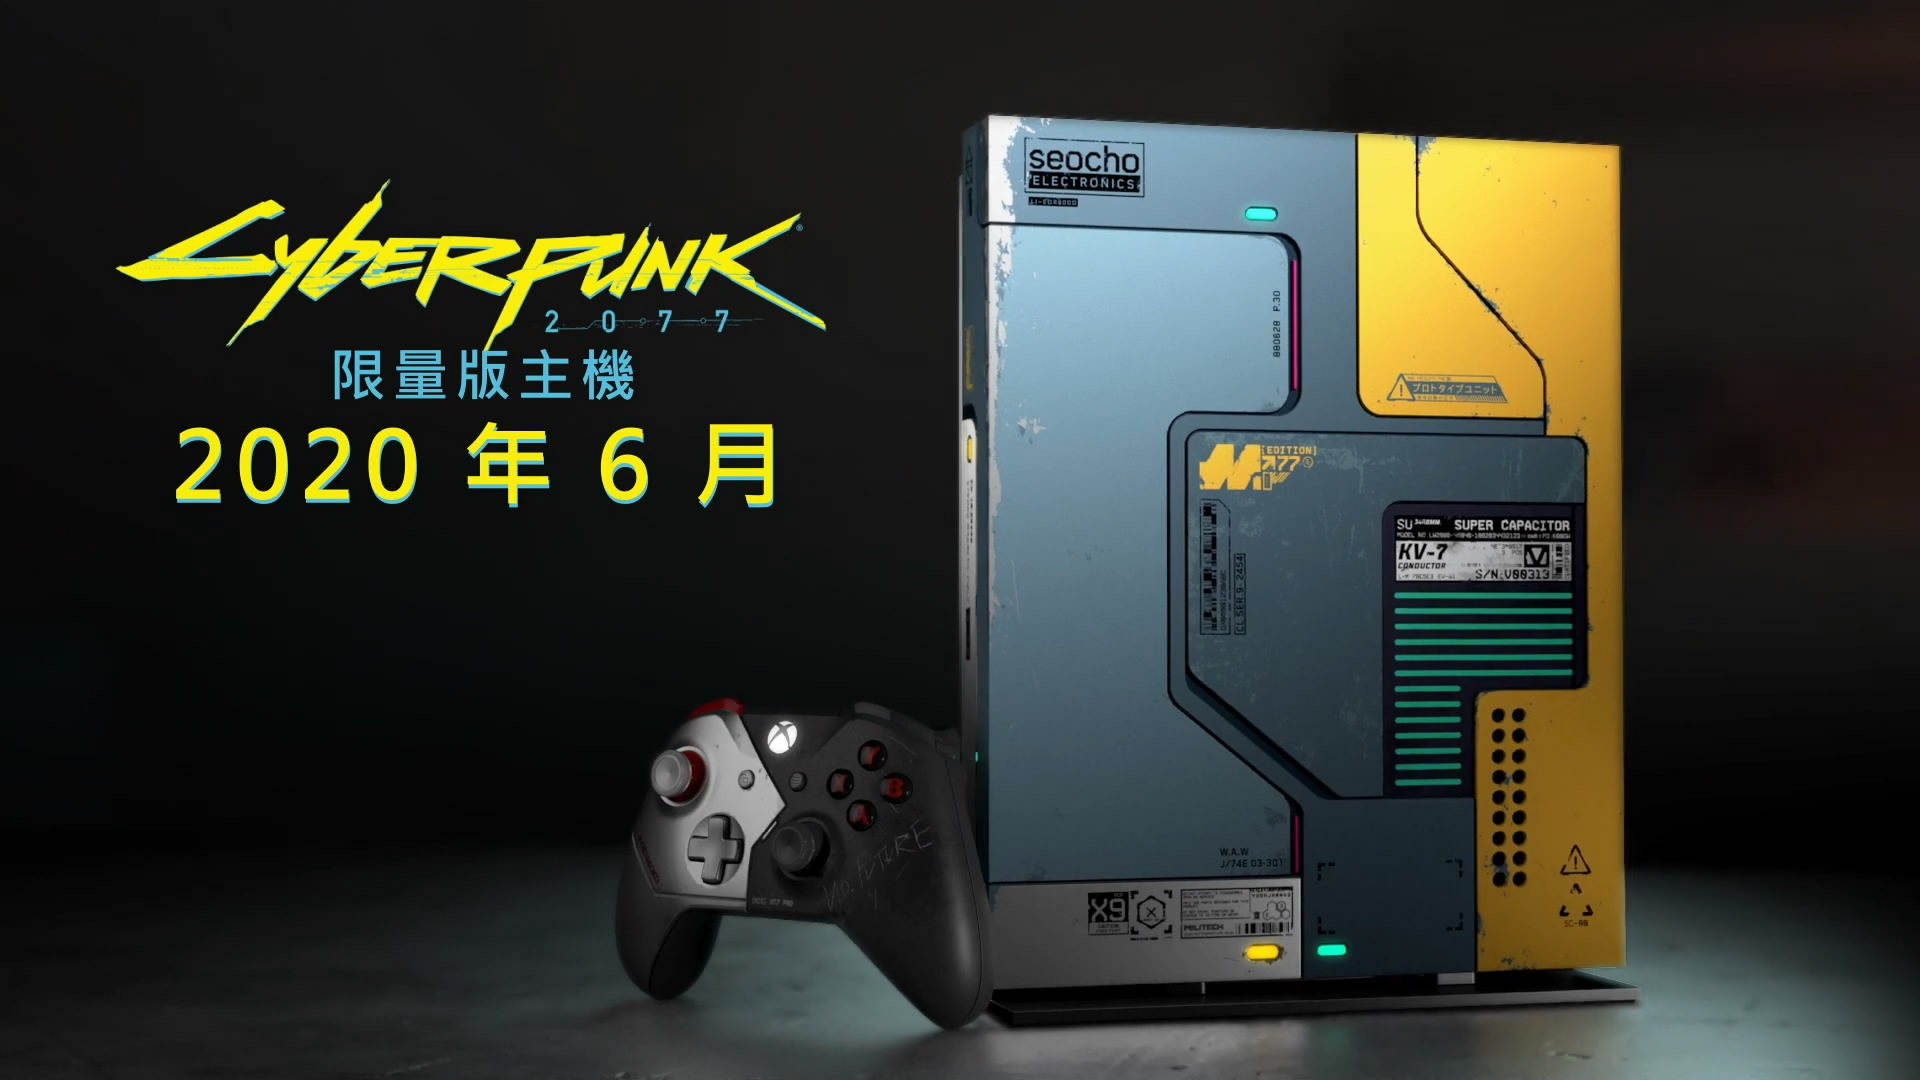 《赛专朋克2077》限量版Xbox主机中文预告 6月正在台支卖